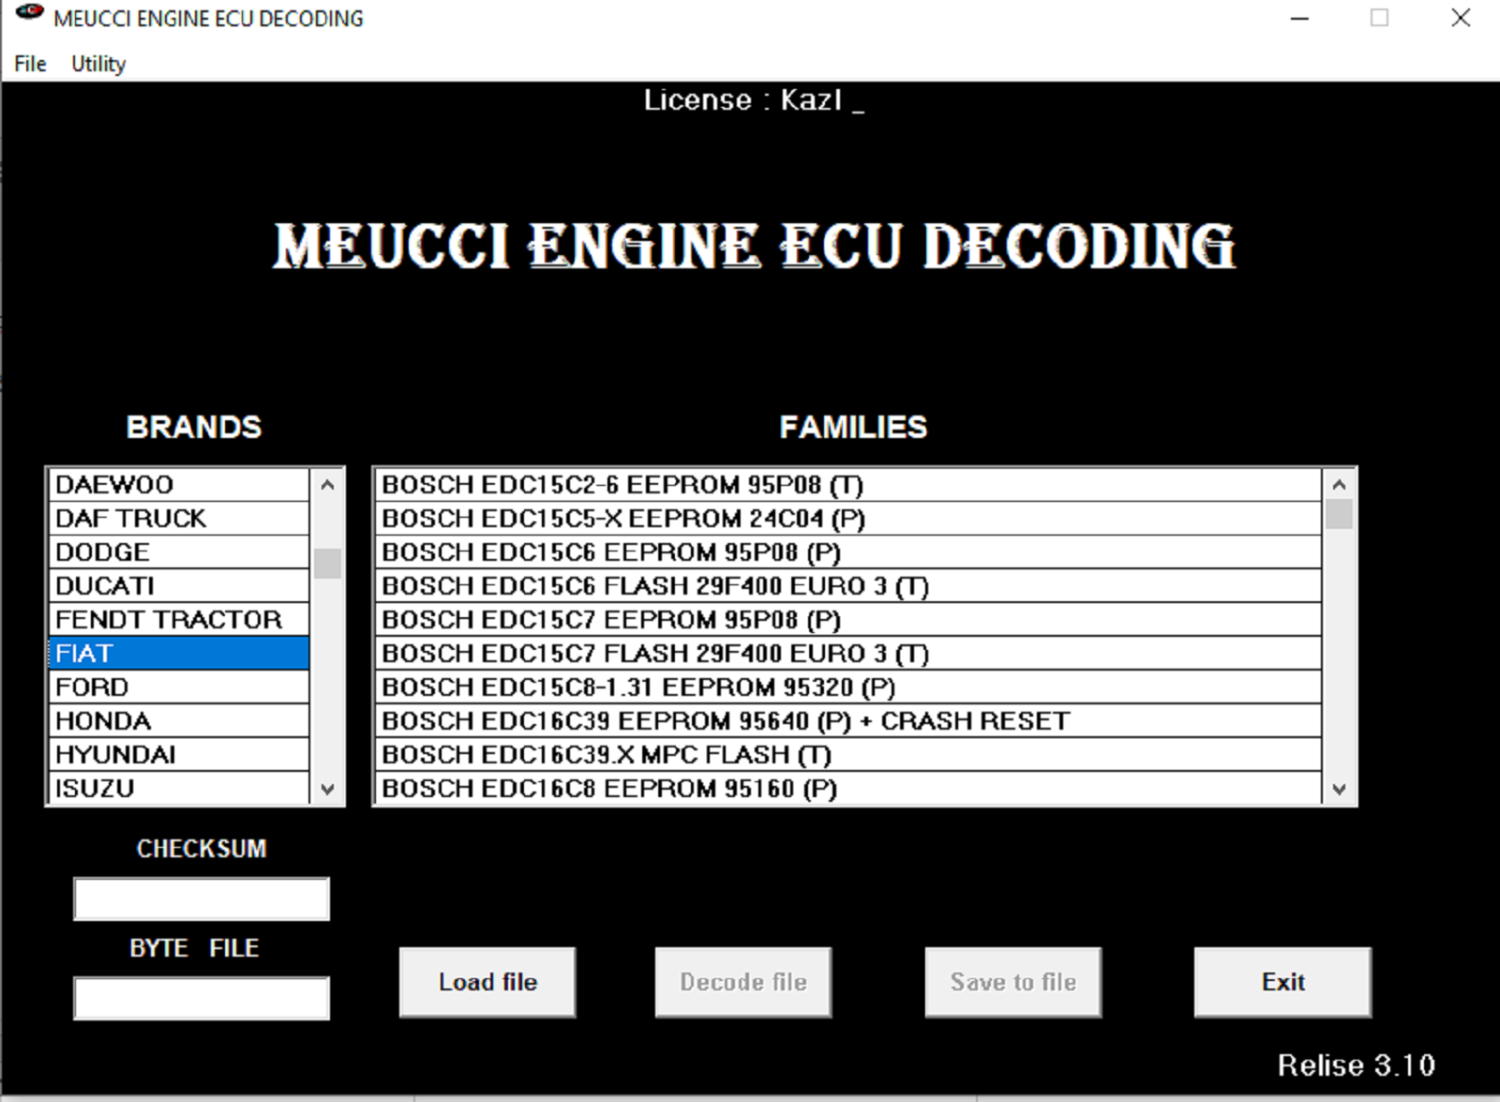 immo off software meucci engine ecu decoding v3.1 2018 version instant download